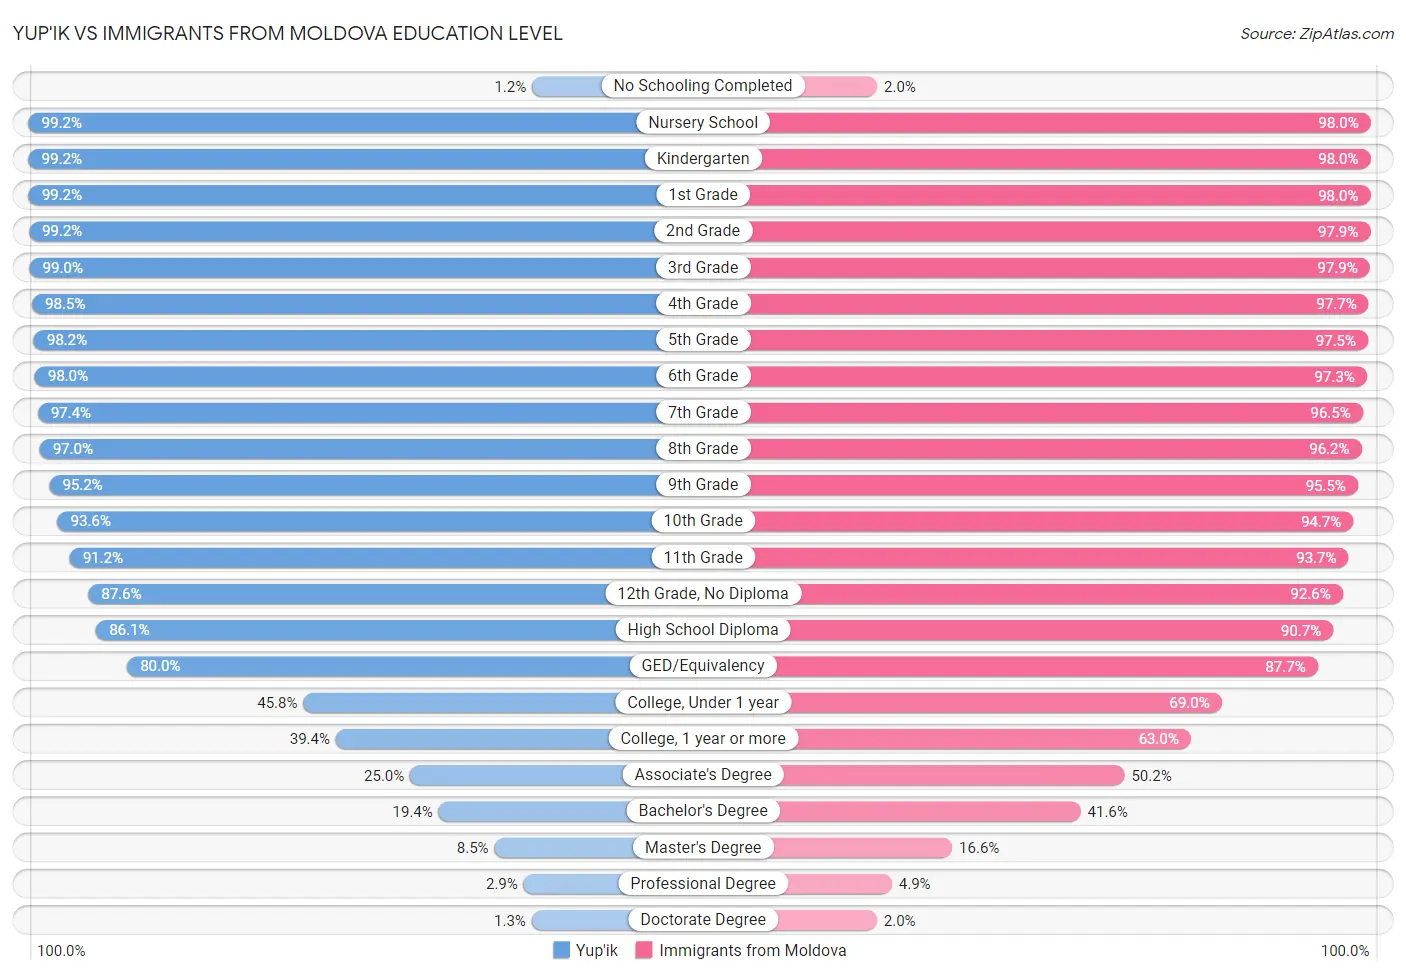 Yup'ik vs Immigrants from Moldova Education Level